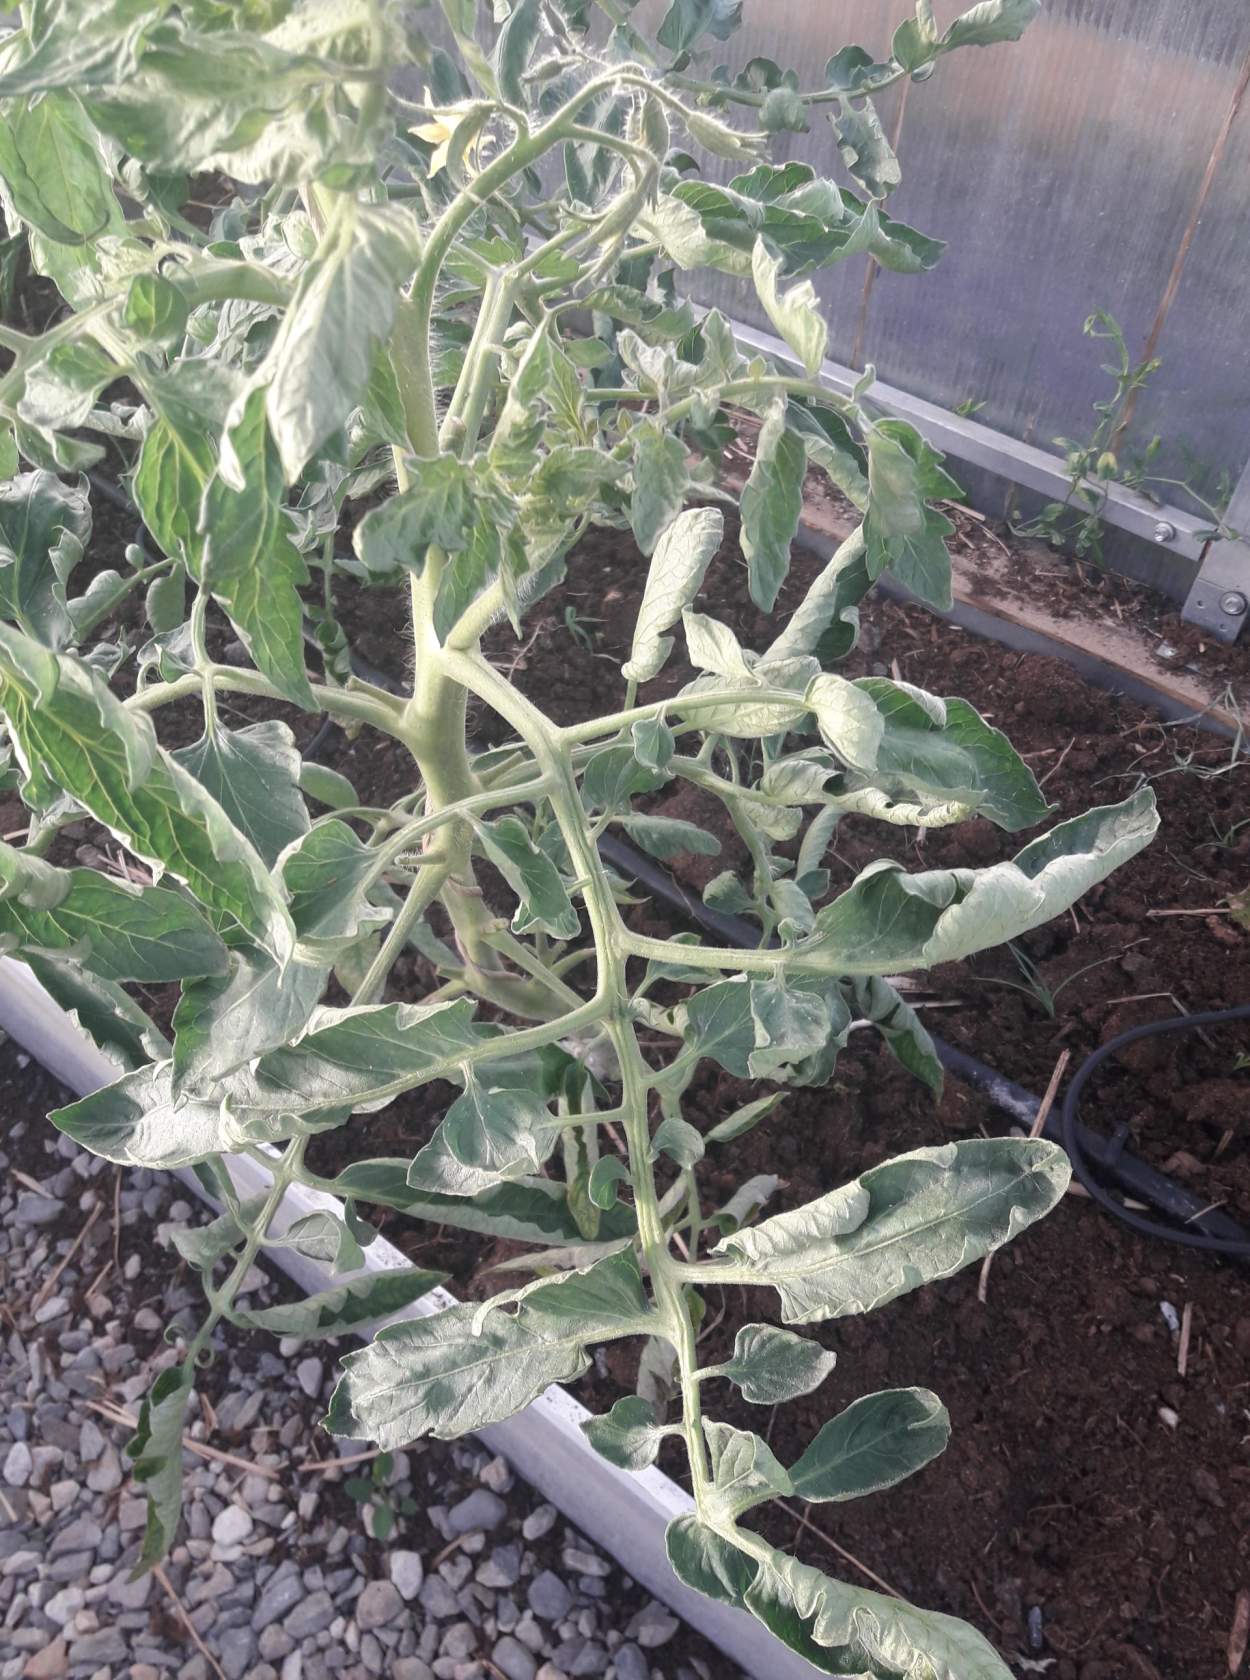 u-pomidor-skruchivayutsya-listya-2